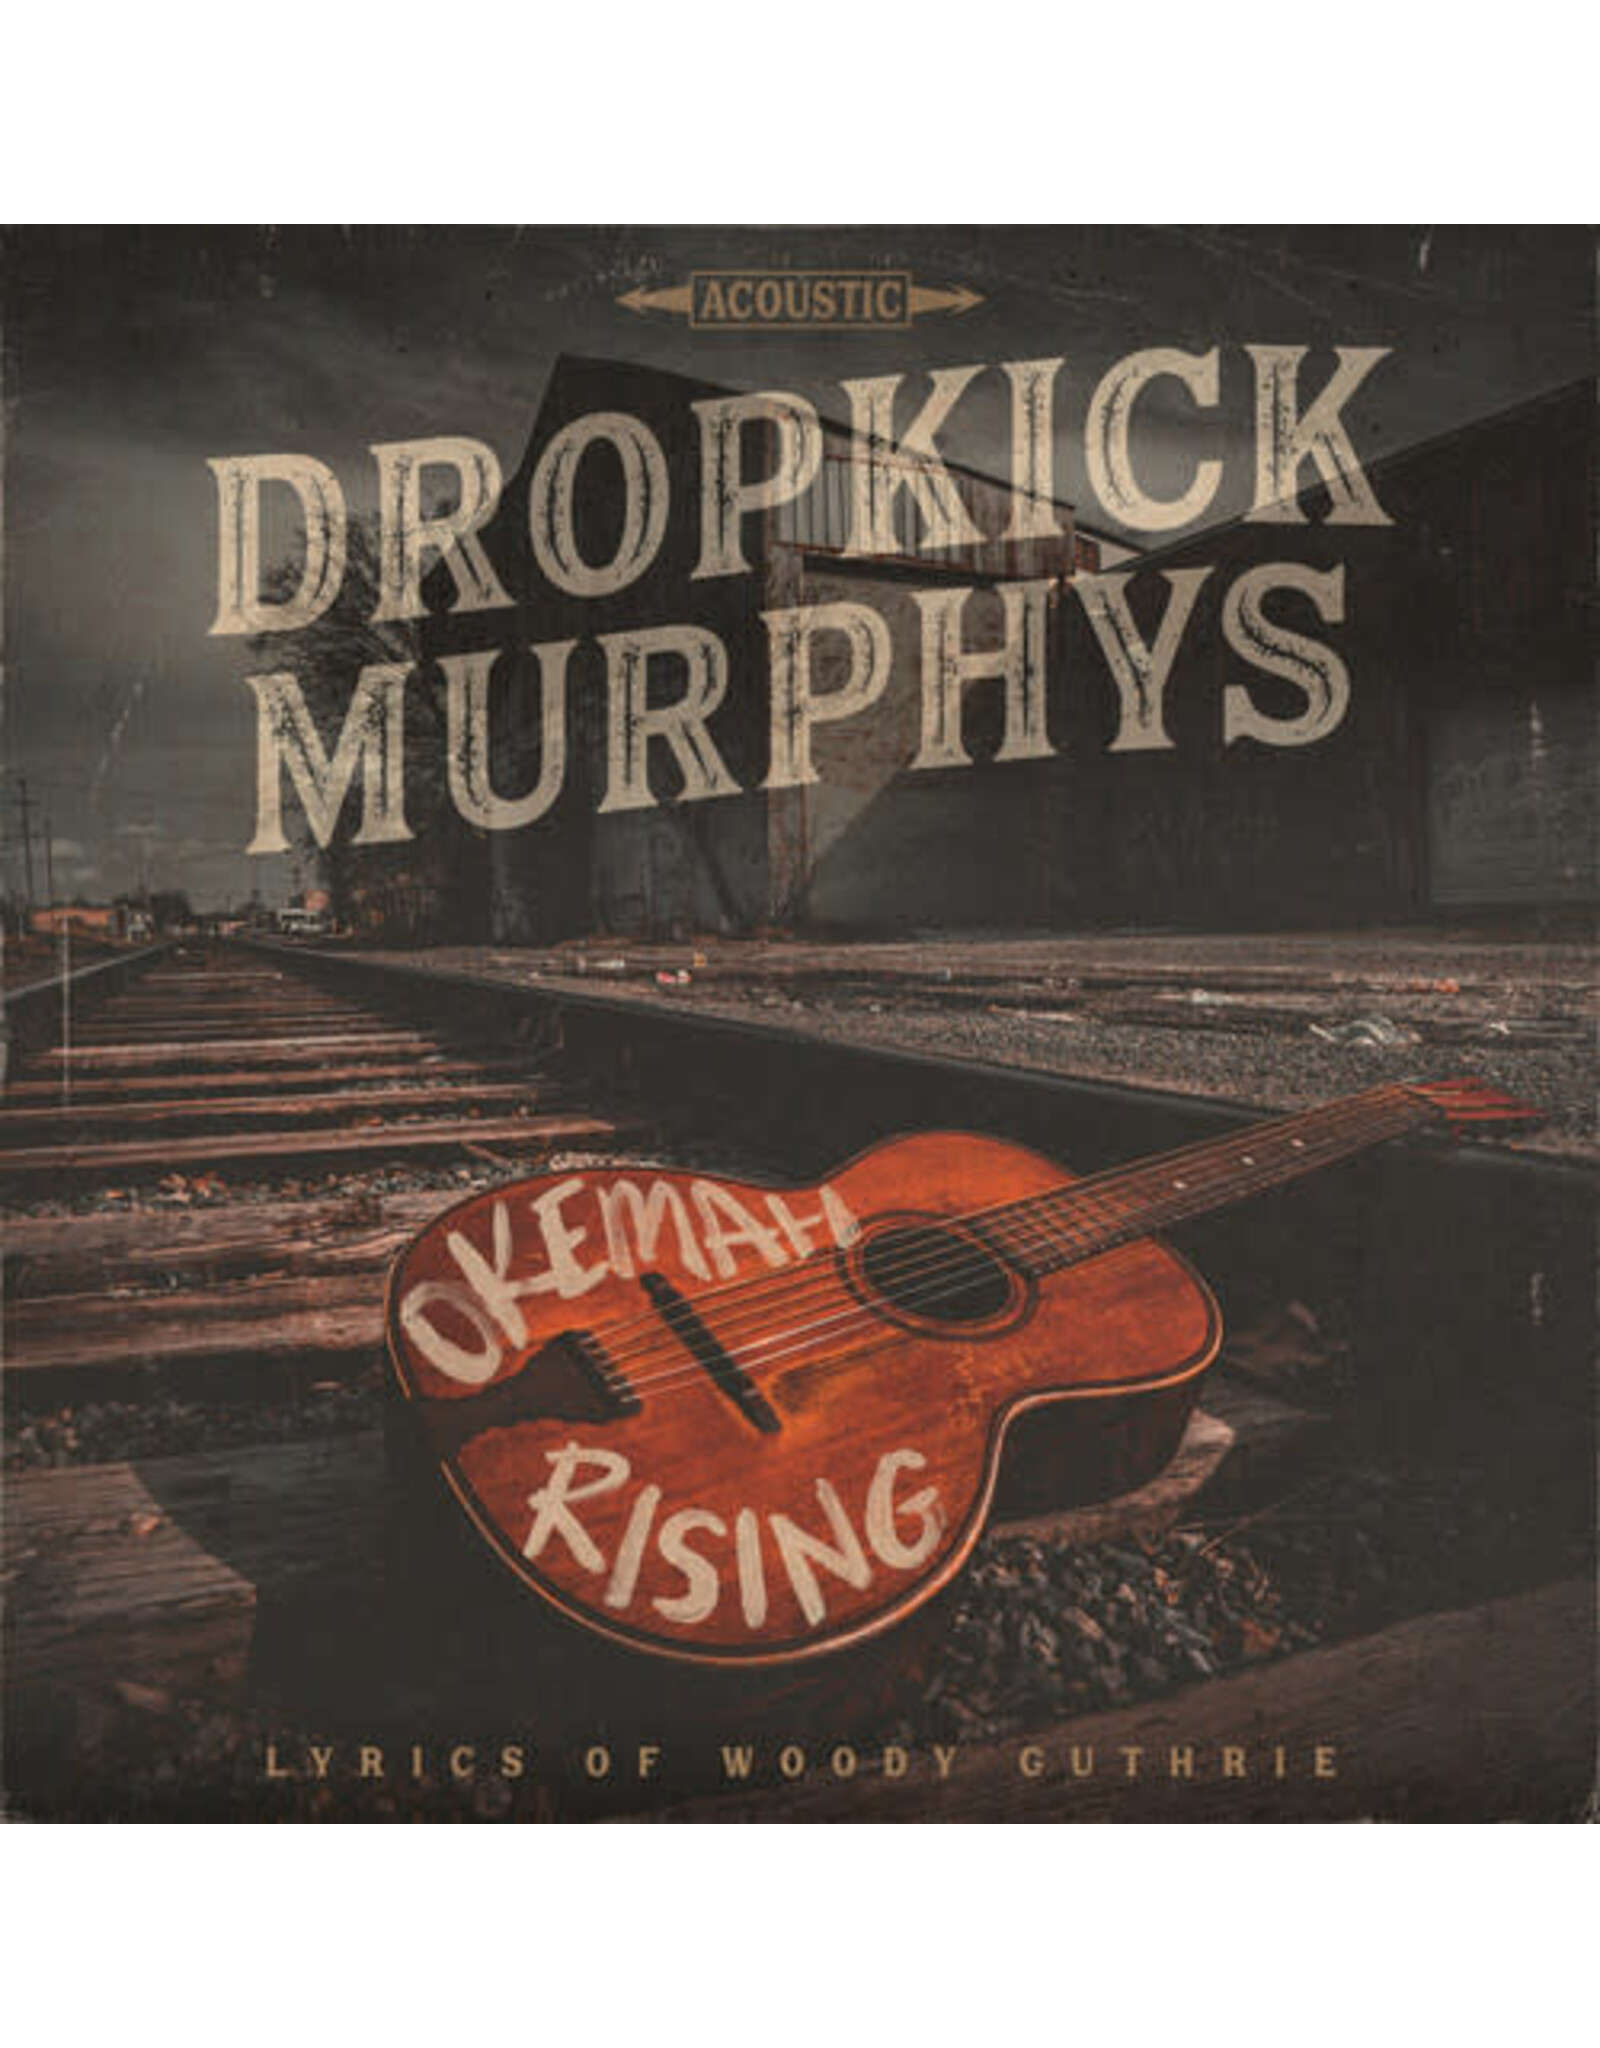 Dropkick Murphys - Okemah Rising LP